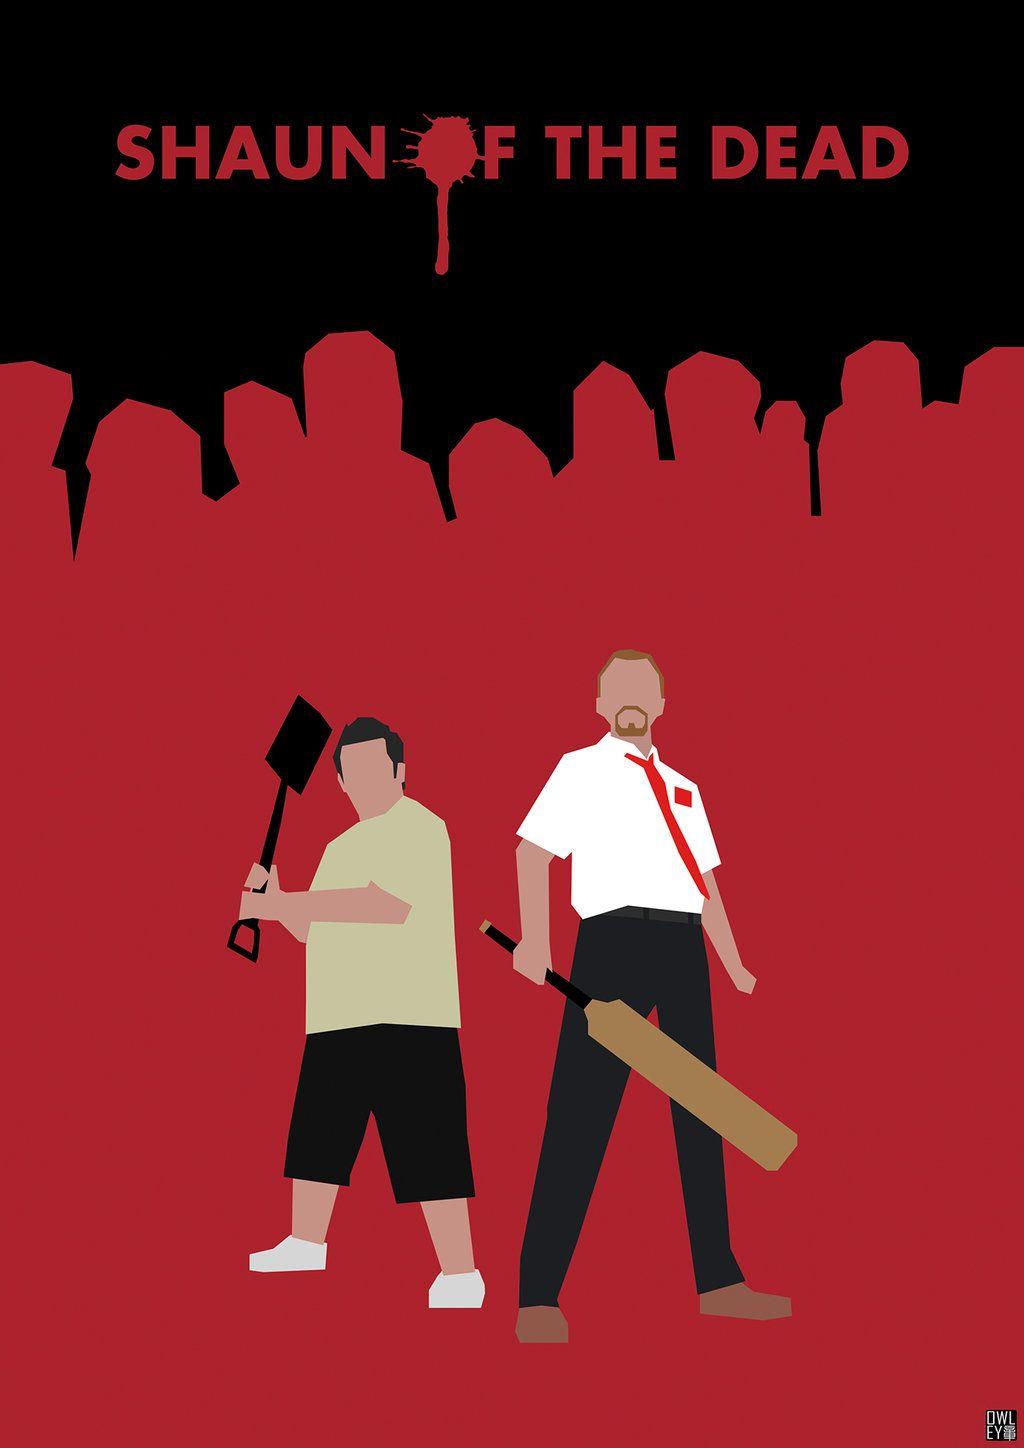 Shaun Of The Dead Poster. 'Shaun of the Dead' poster. Hero Complex